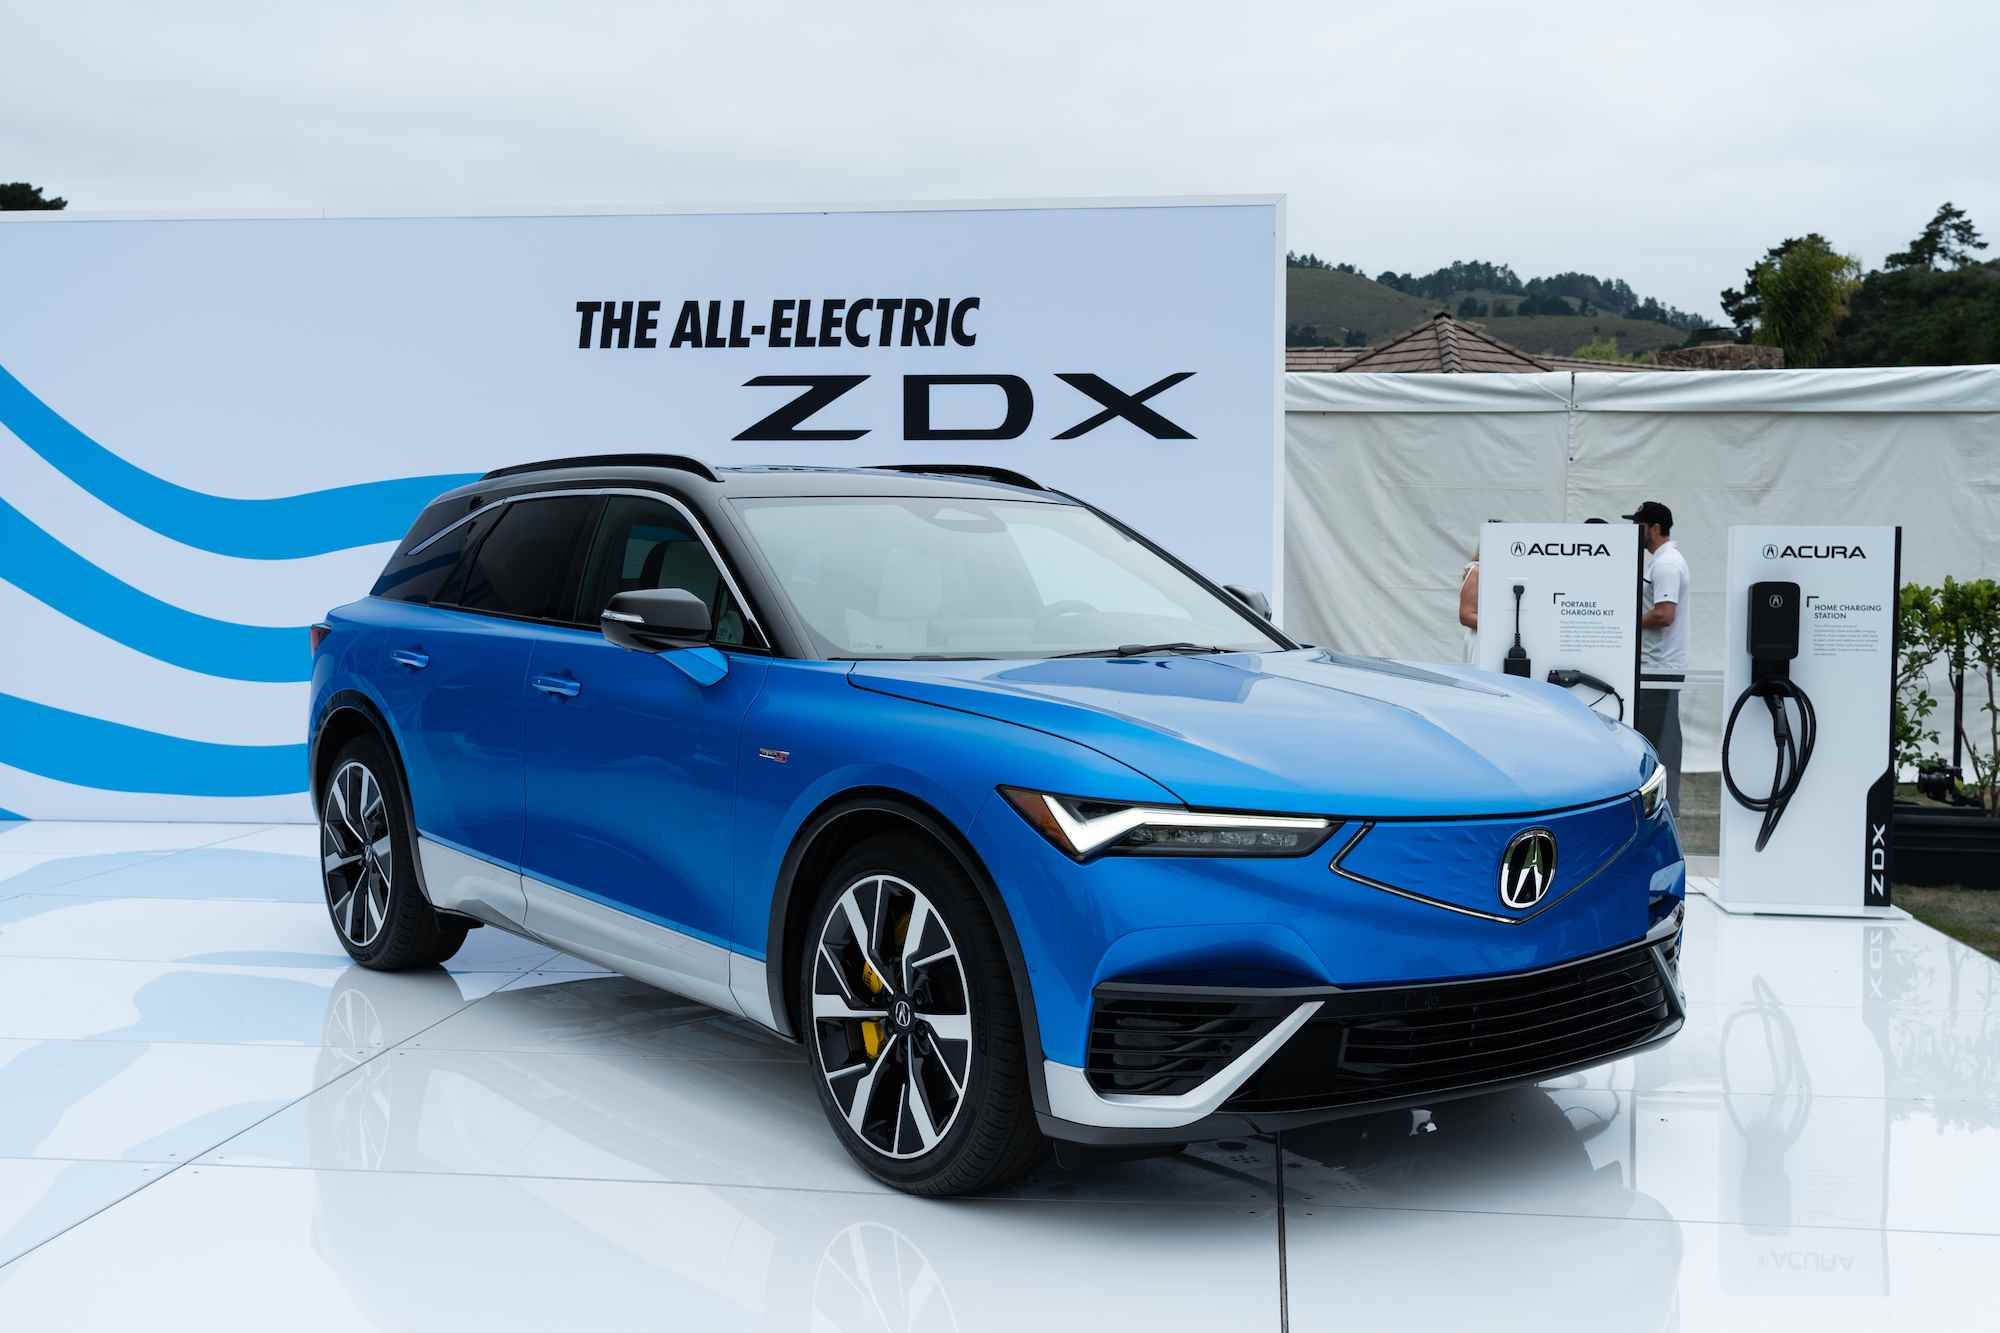 Acura ZDX EV monterey araba haftası